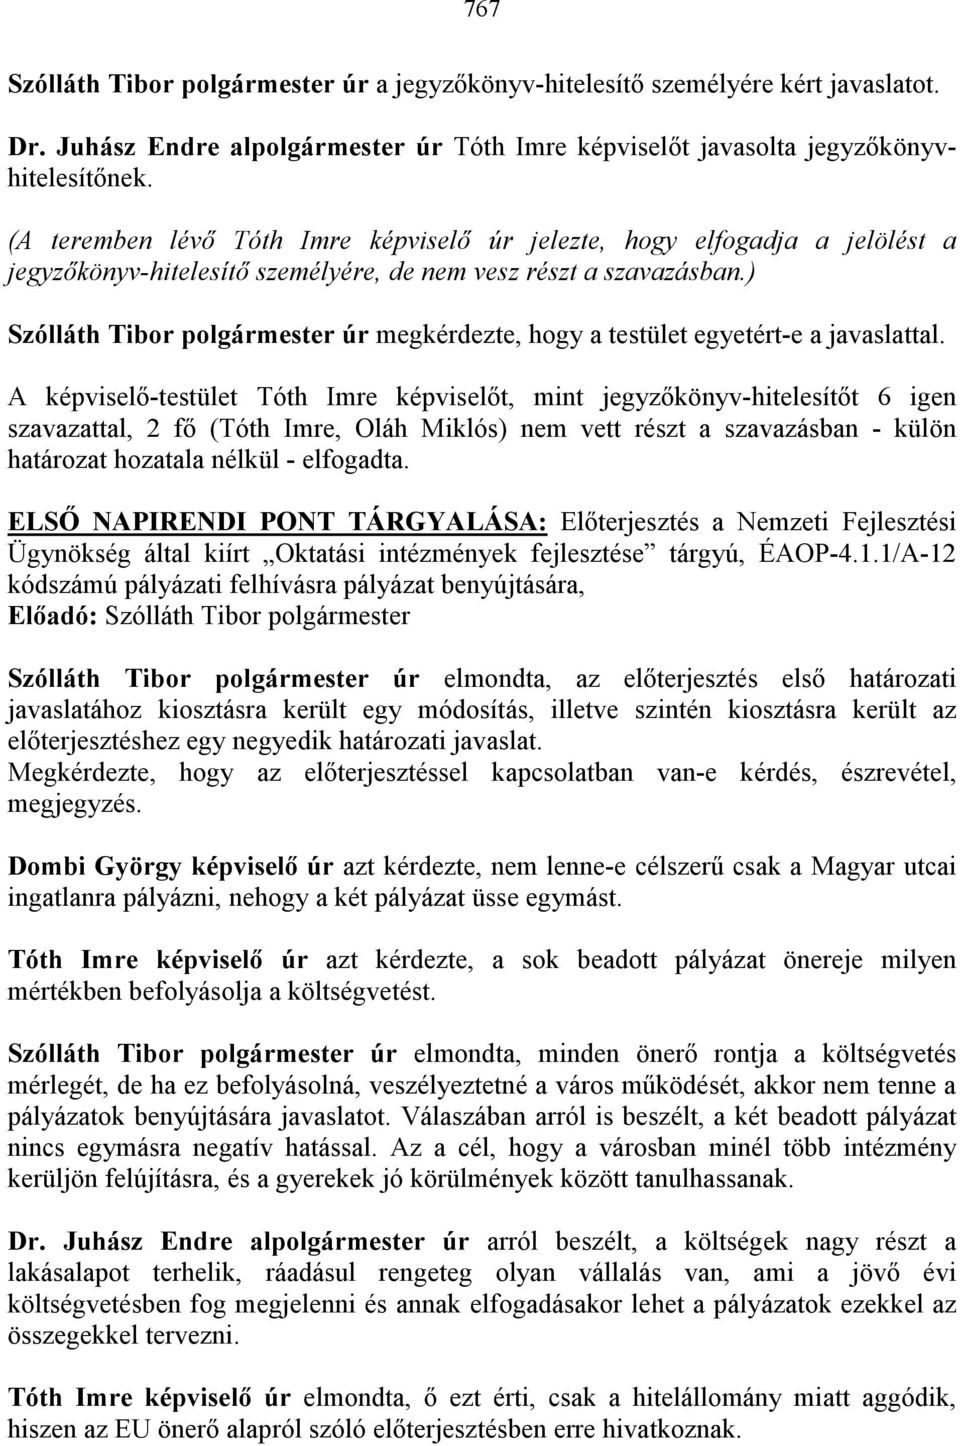 A képviselı-testület képviselıt, mint t 6 igen szavazattal, 2 fı (, Oláh Miklós) nem vett részt a szavazásban - külön határozat hozatala nélkül - elfogadta.